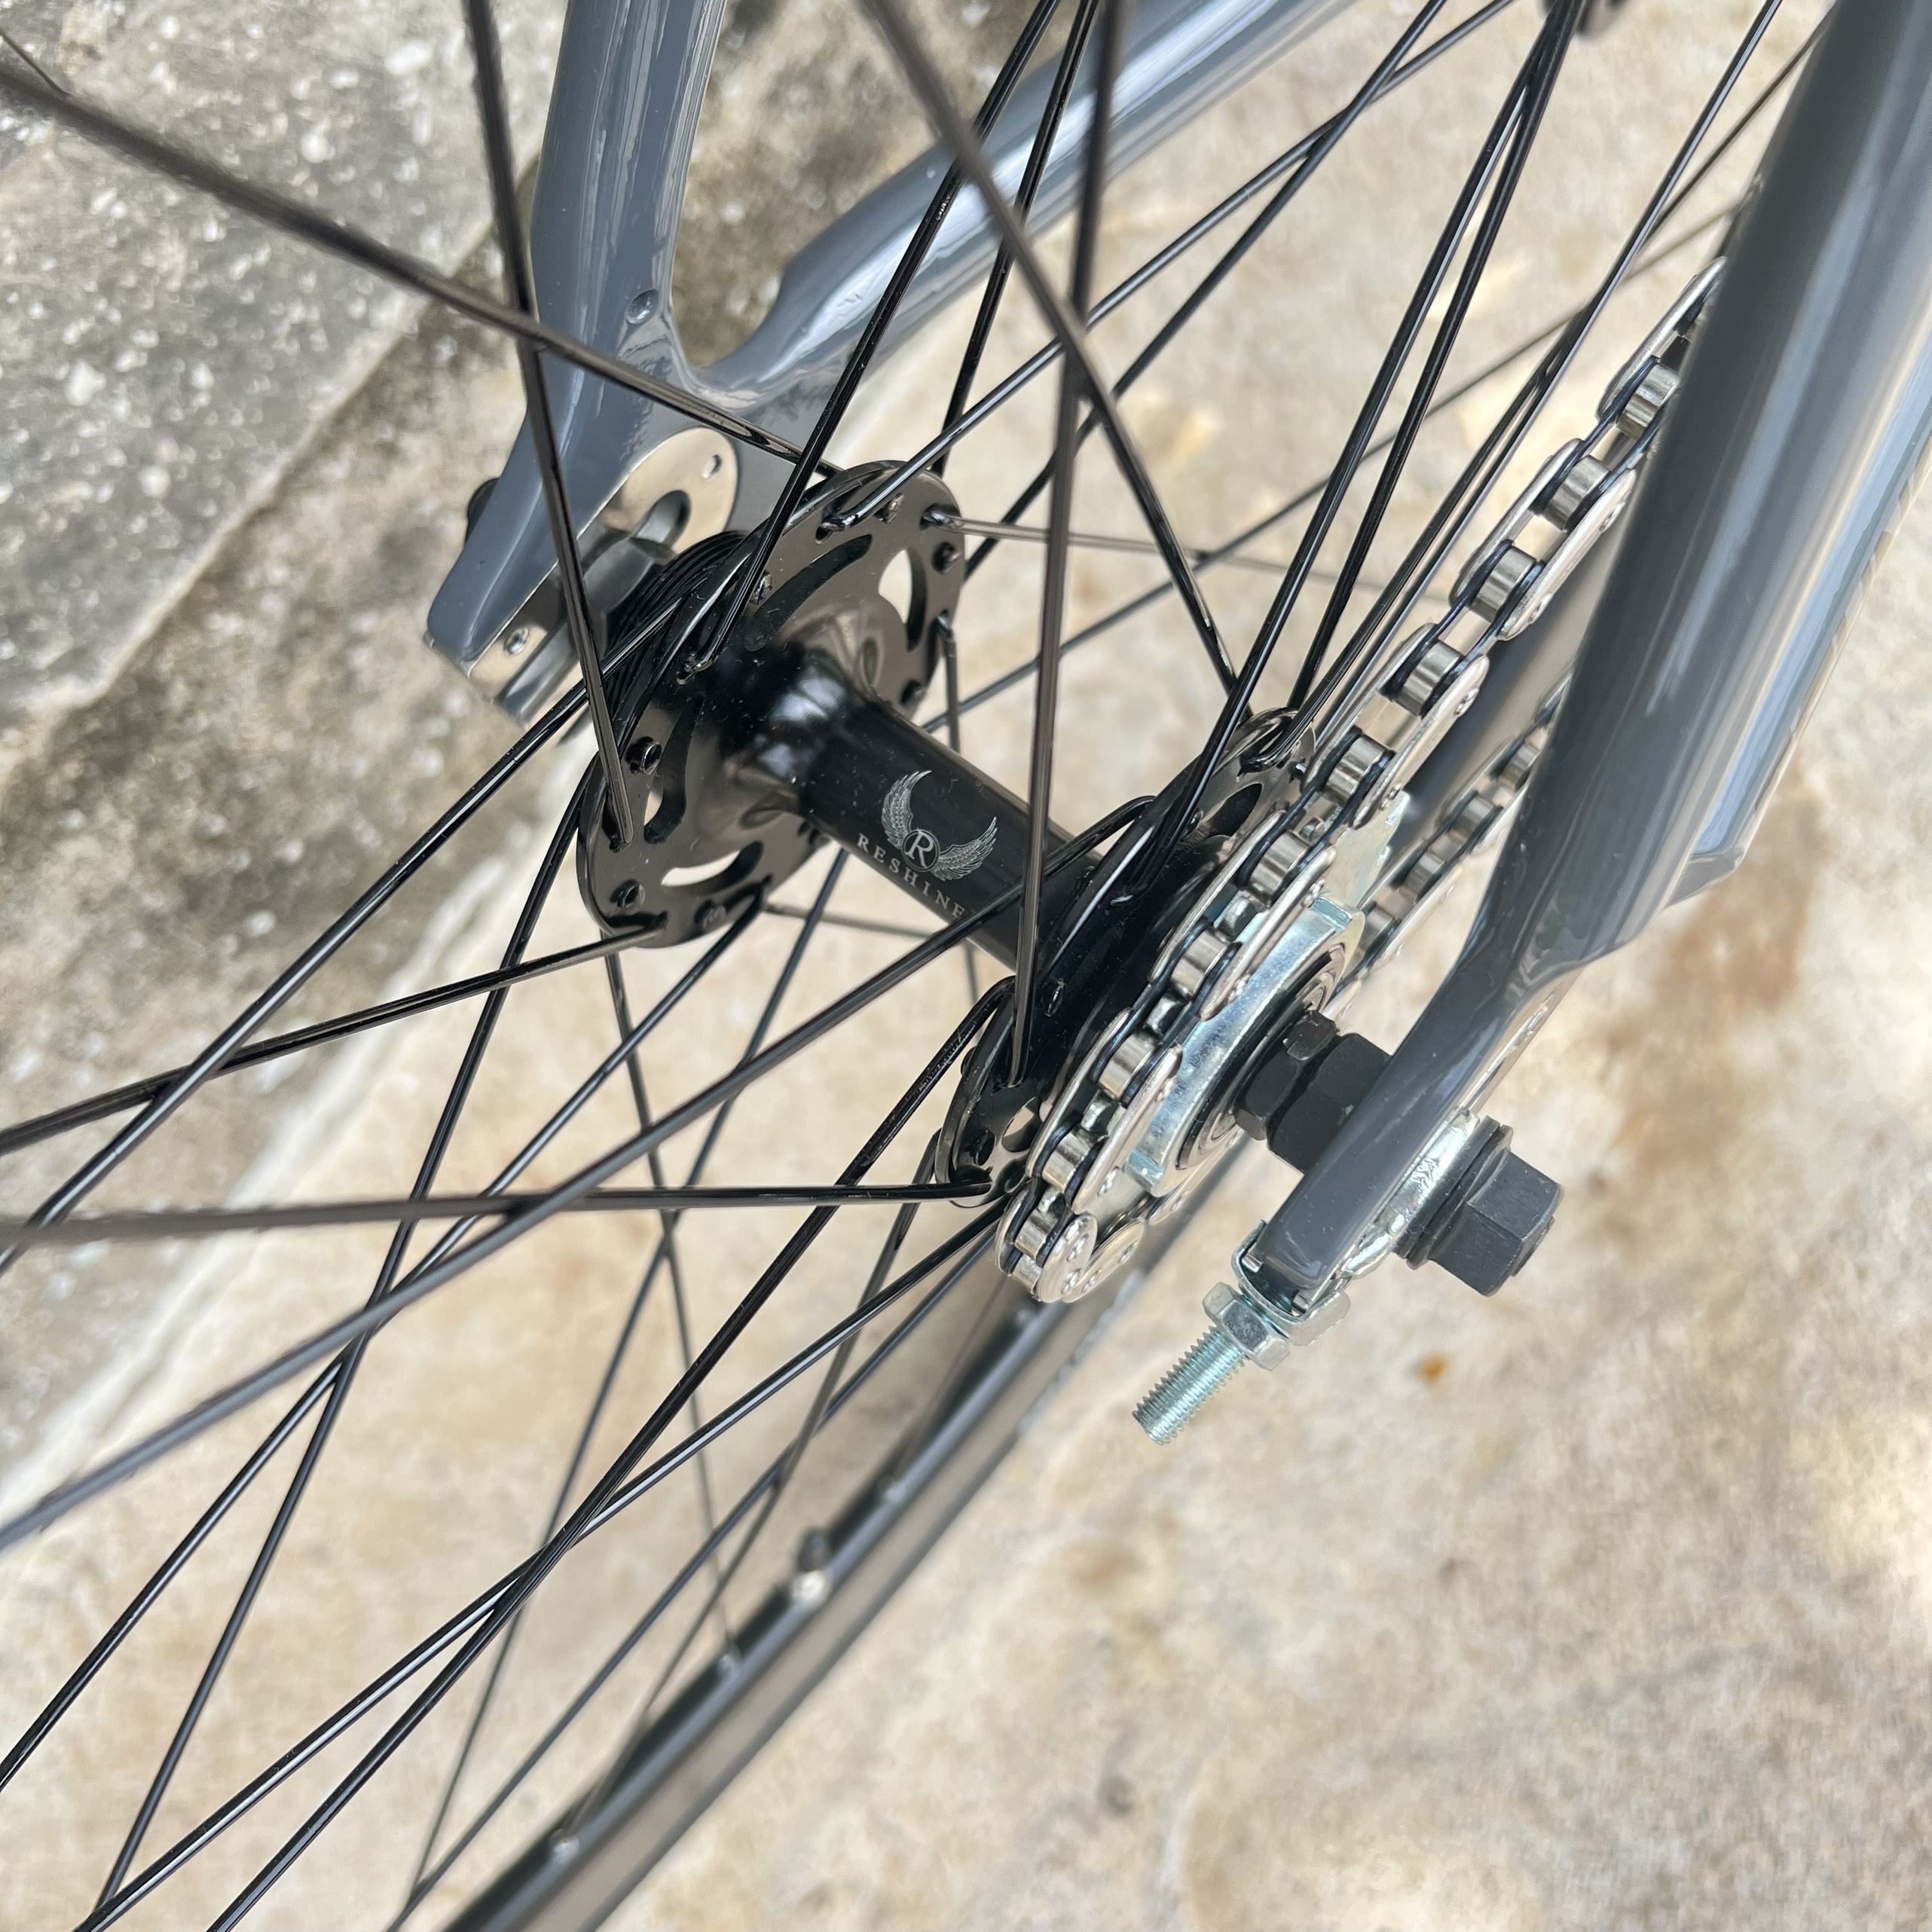 Xe đạp fixed gear TSUNAMI SNM100 nâng cao trước 3 đao đen - Xám xi măng